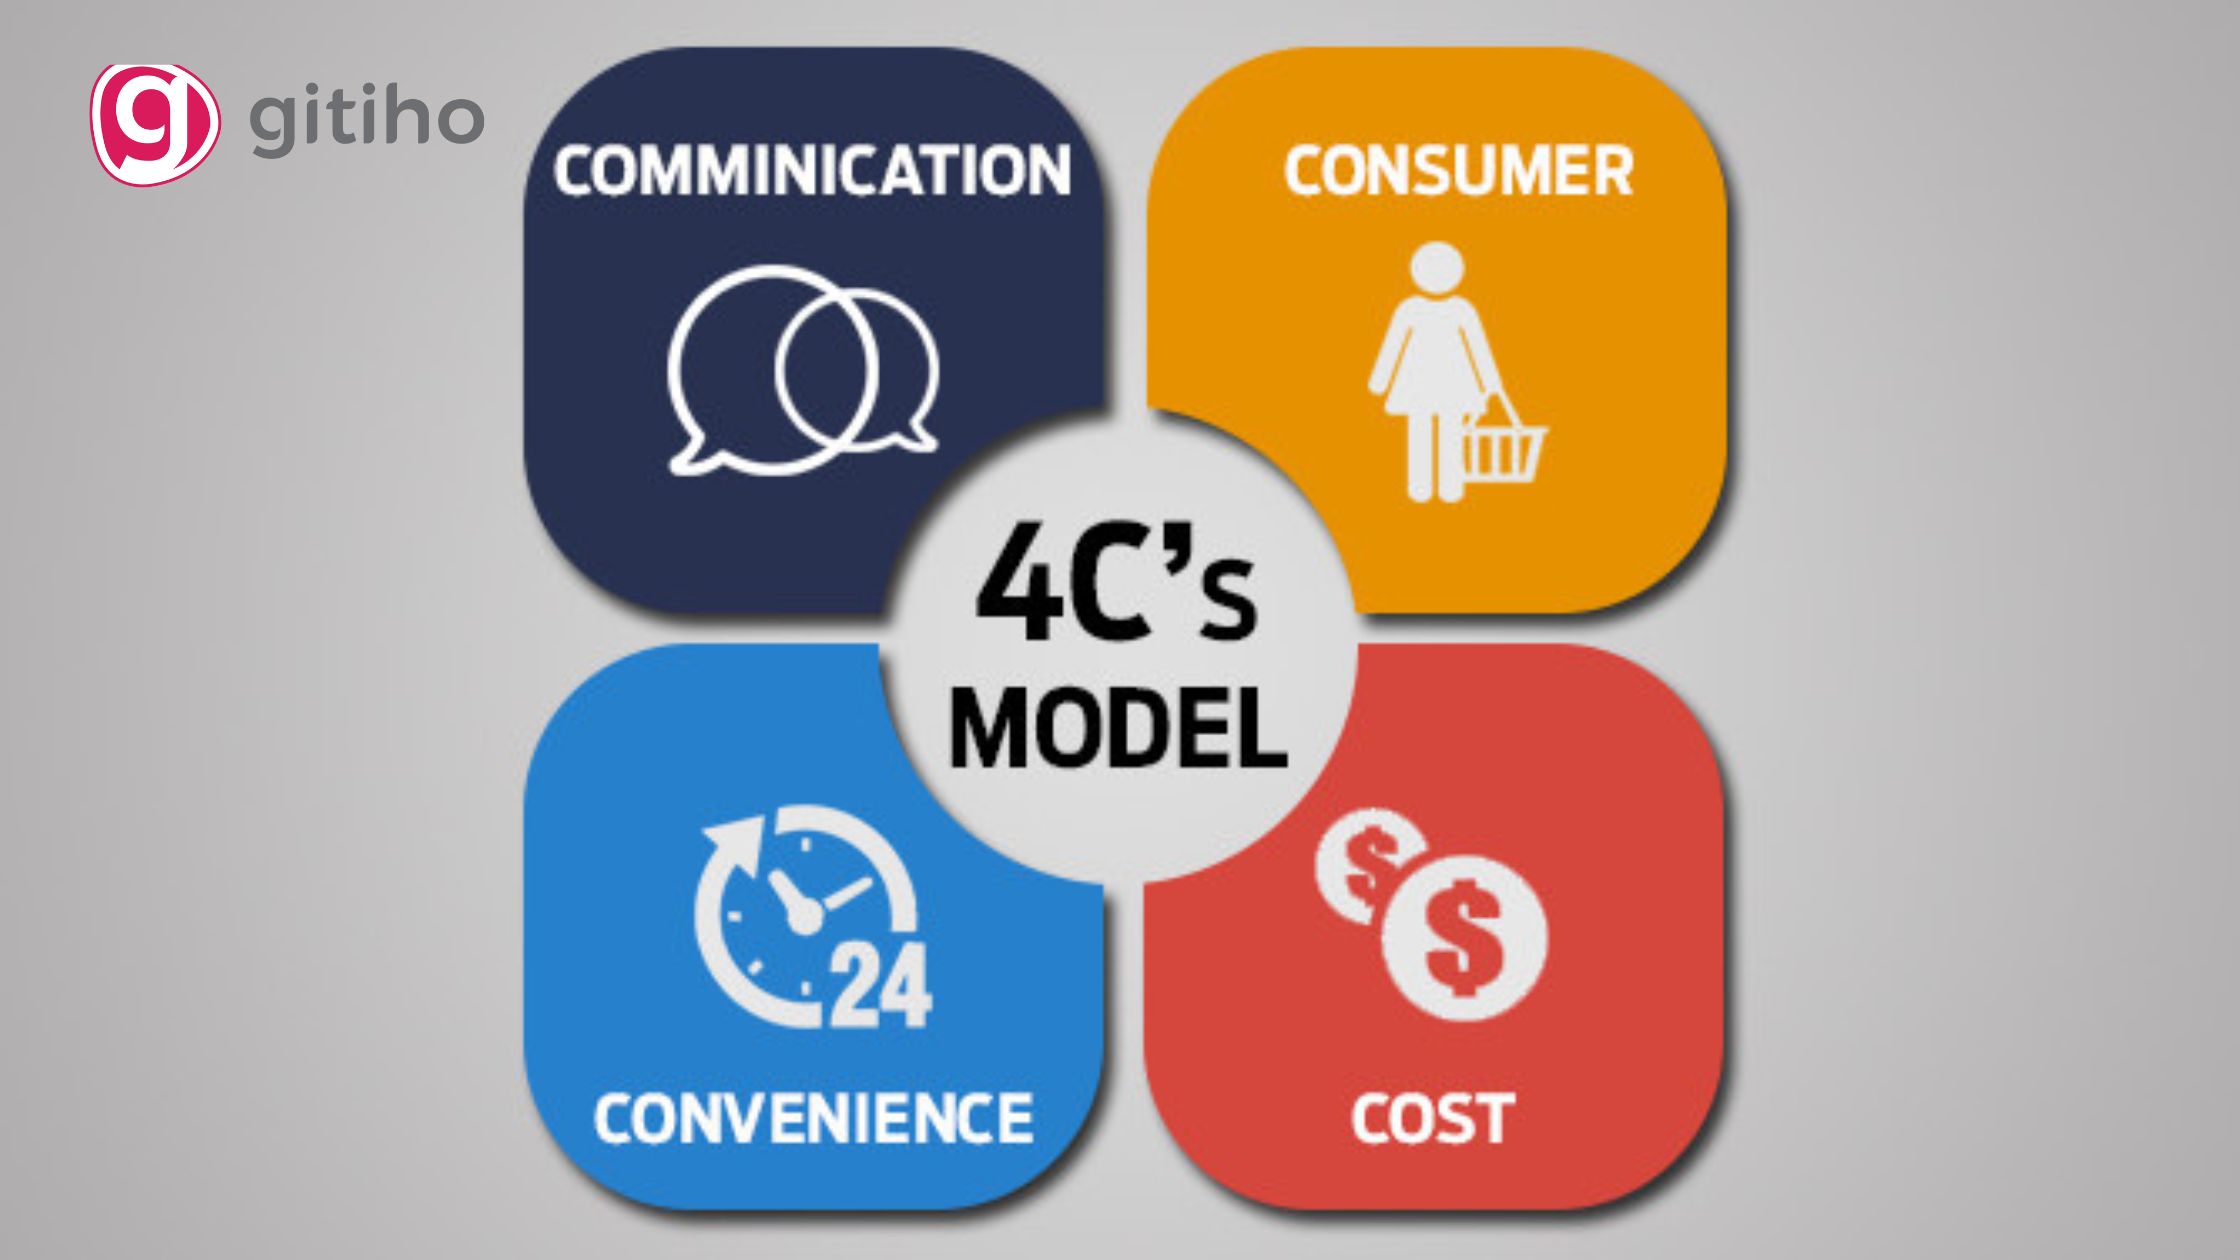 Khái niệm 4P và 4C trong Marketing  Kiến thức để làm Marketing hiệu quả  nhất 2019  ATP Software